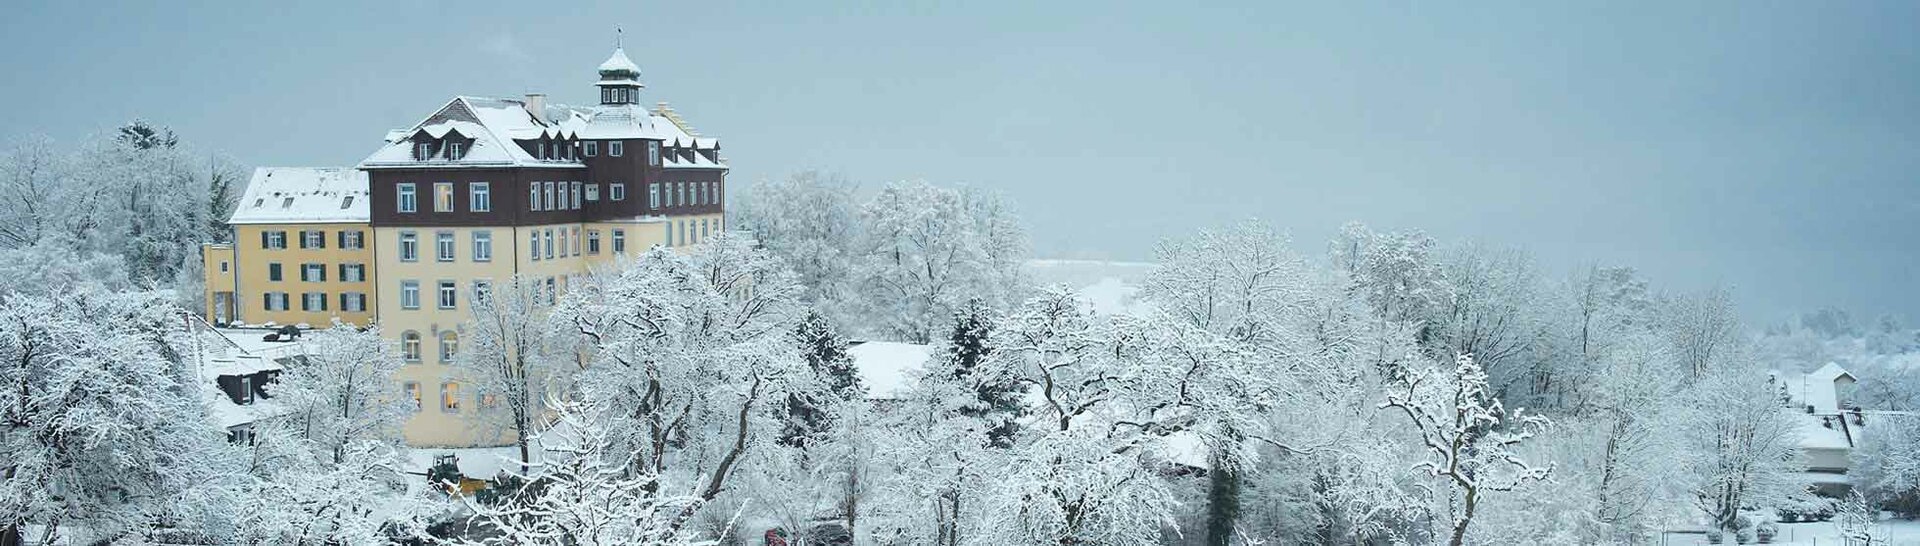 Schloss Spetzgart im Schnee